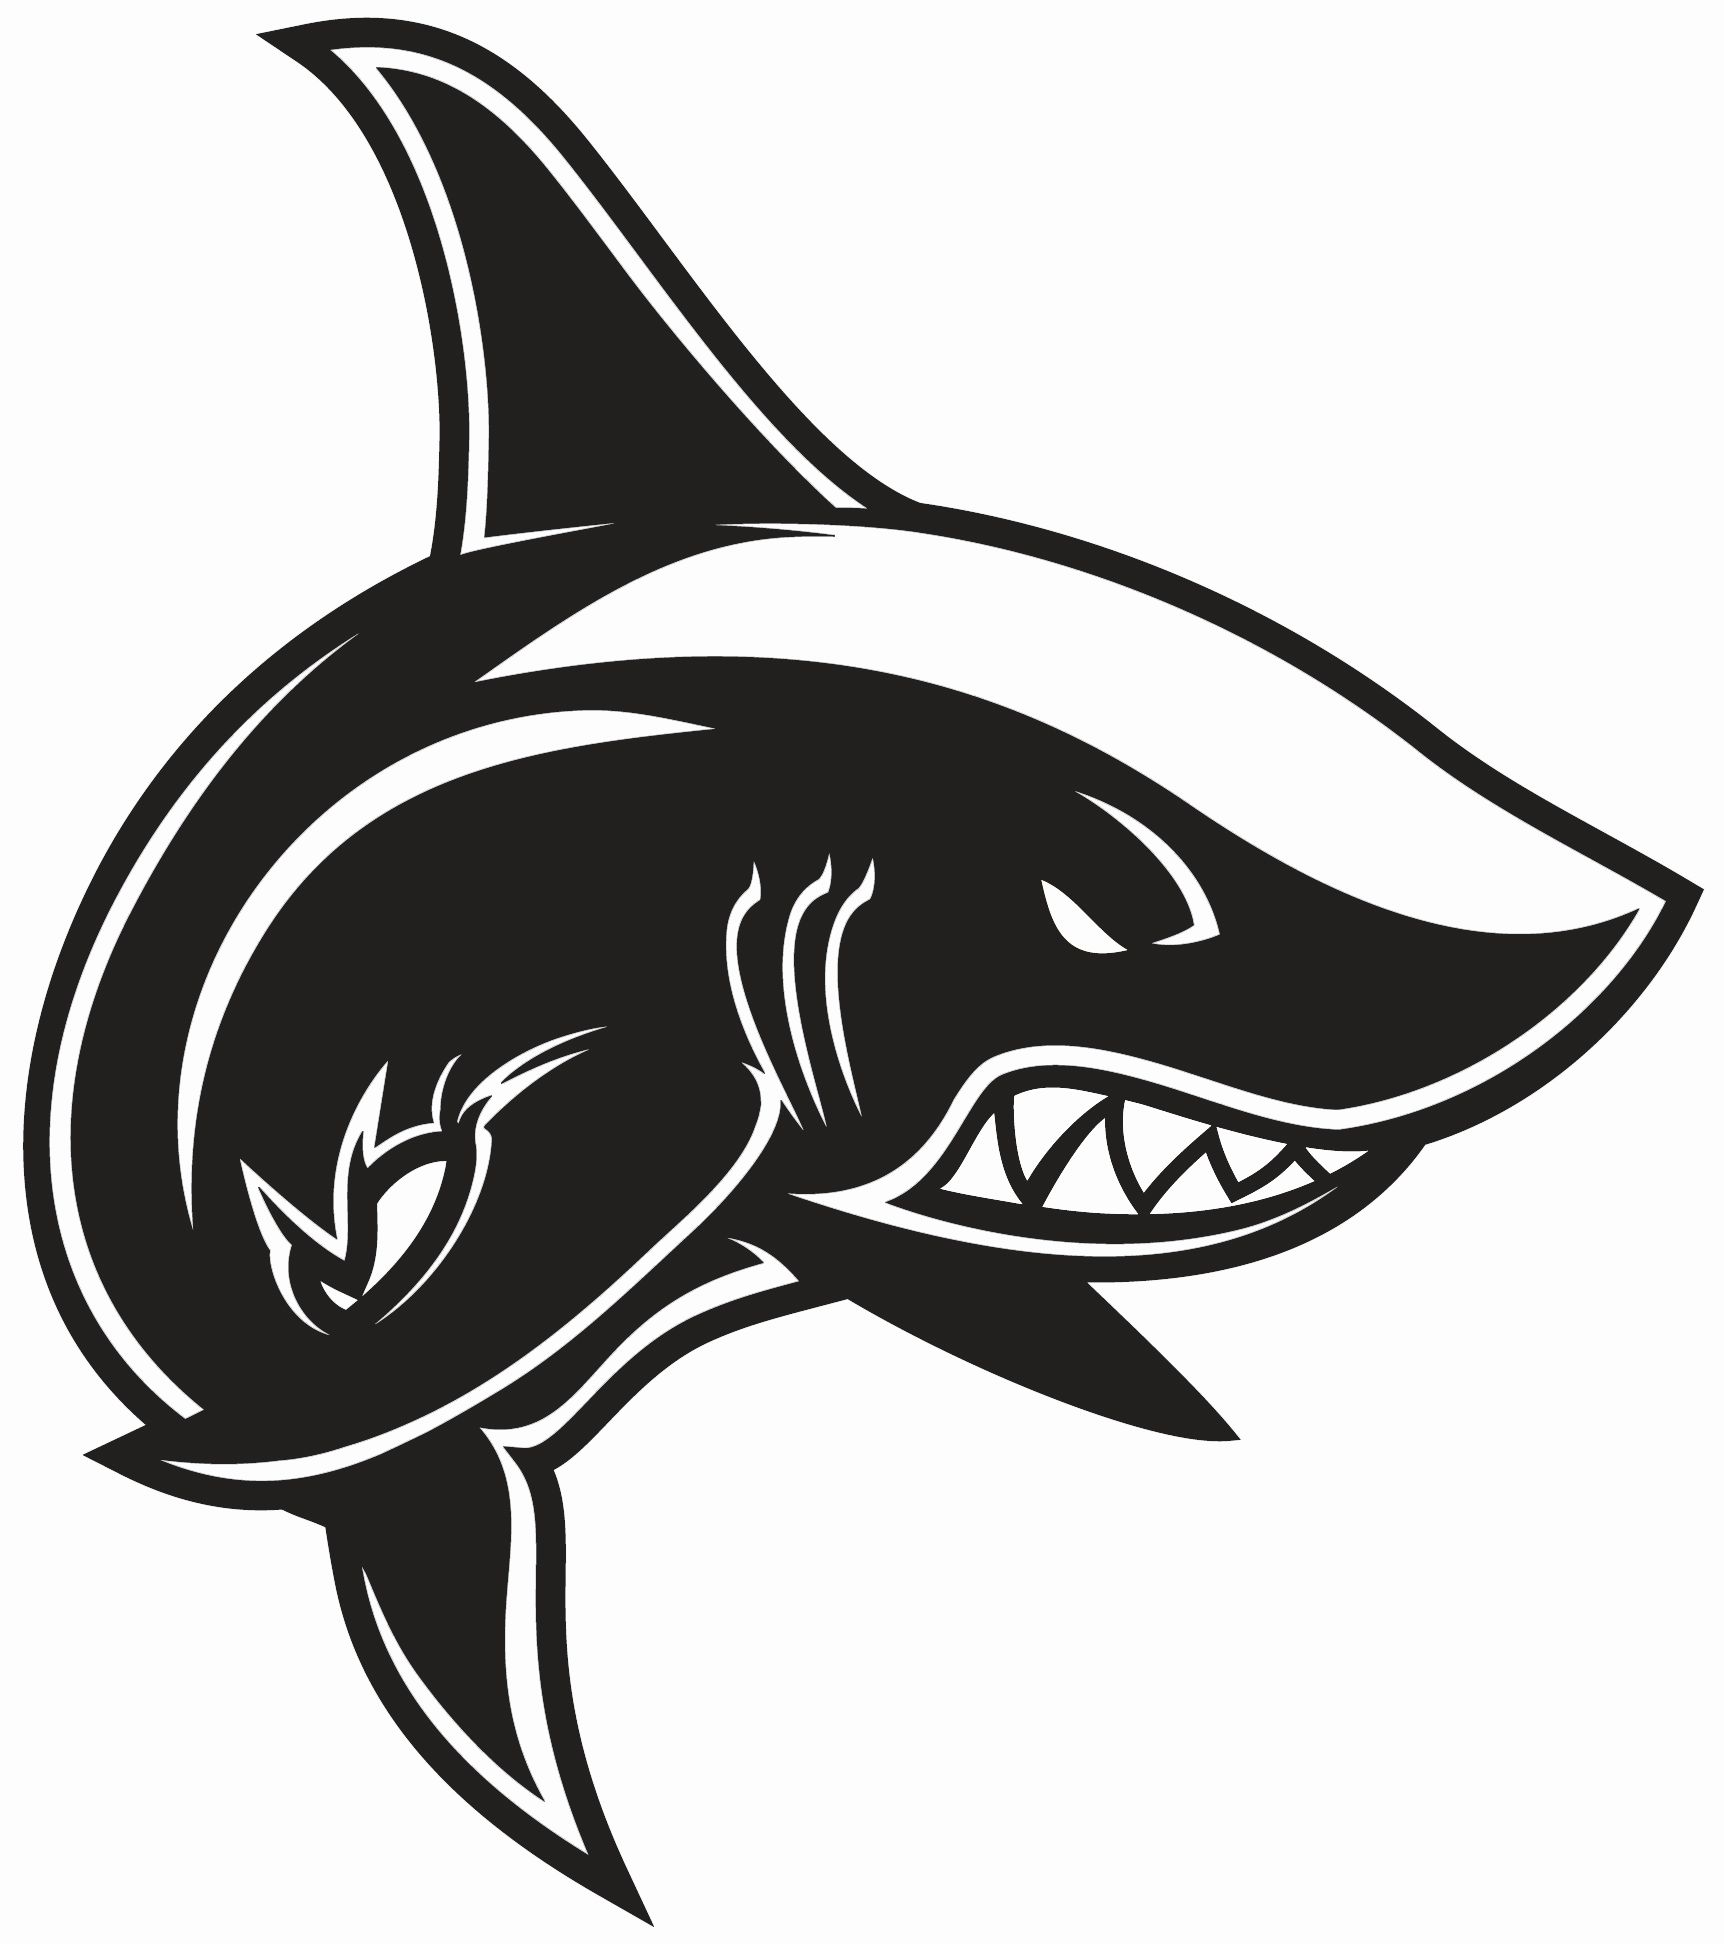 акула и человекВидео по теме: белая акулаБольшая белая акула (Кархародон).П...